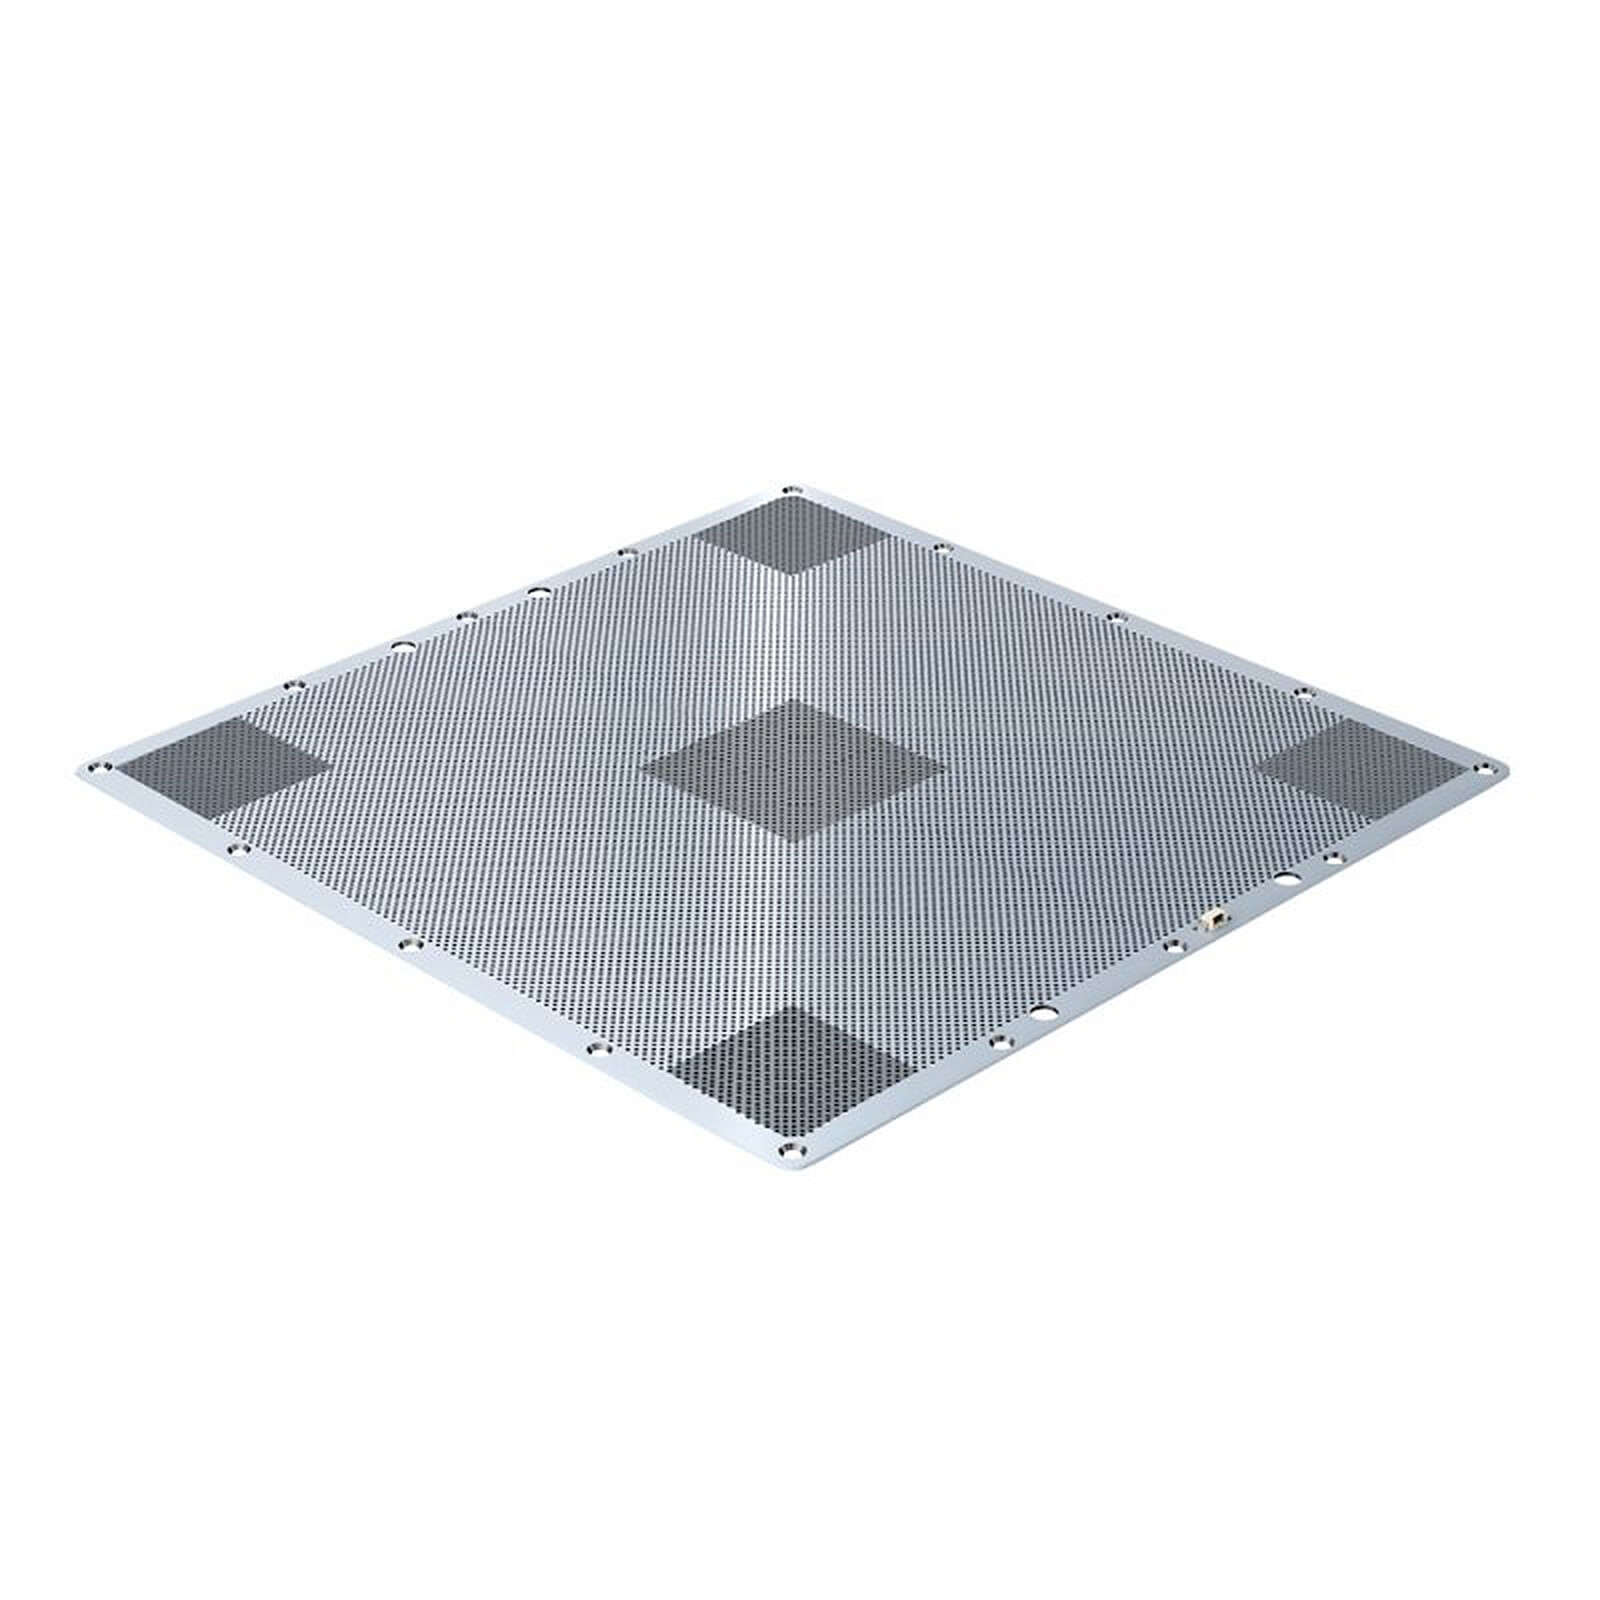 Zortrax Plateau pour M200 - Accessoires imprimante 3D - Garantie 3